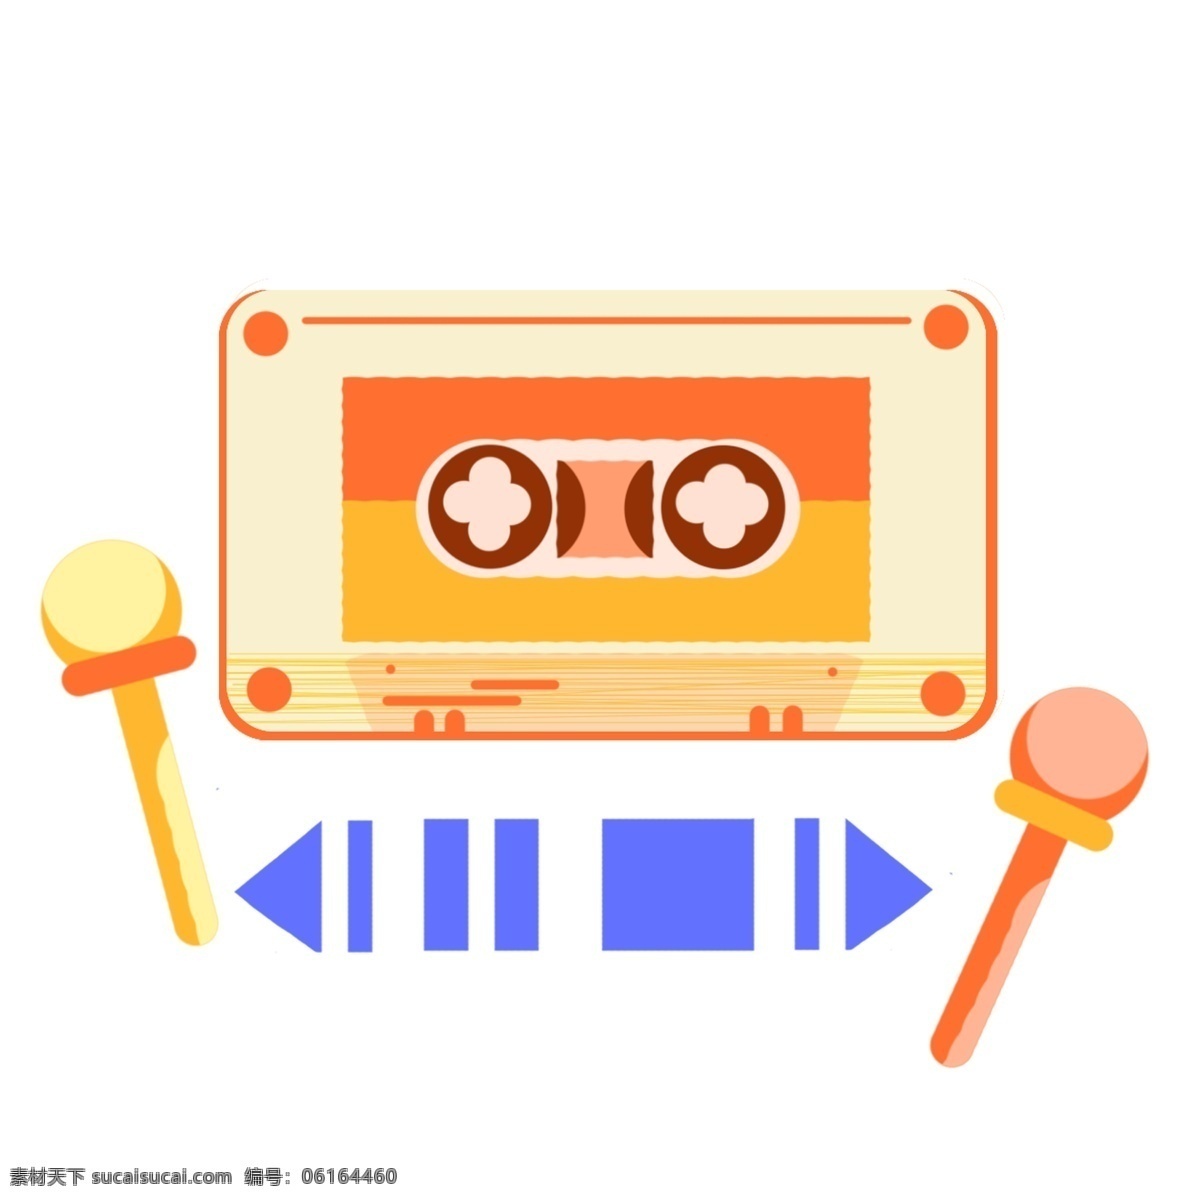 音乐 磁带 话筒 插画 音乐磁带 蓝色播放键 黄色麦克风 音乐话筒 卡通磁带插画 播放器 音乐用品